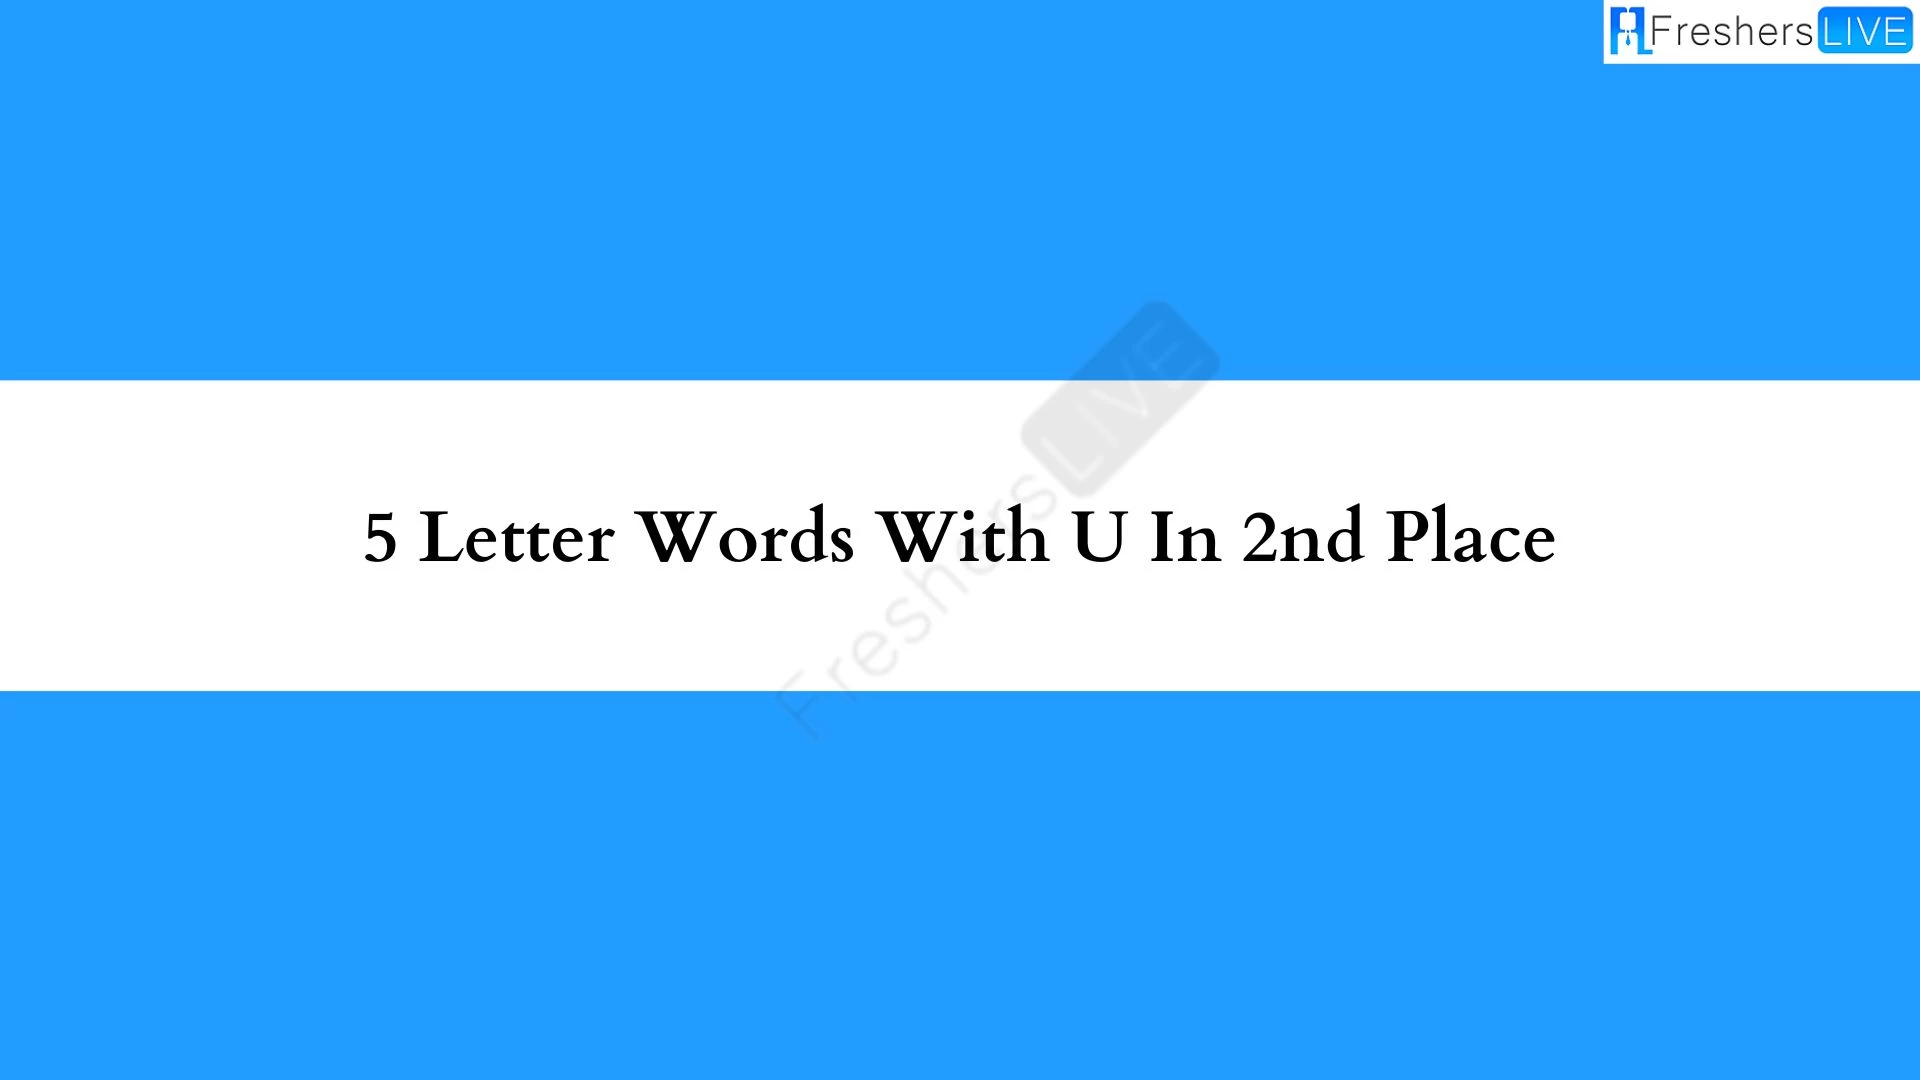 Una palabra de 5 letras, en el segundo lugar de toda la lista de palabras está la letra “U”